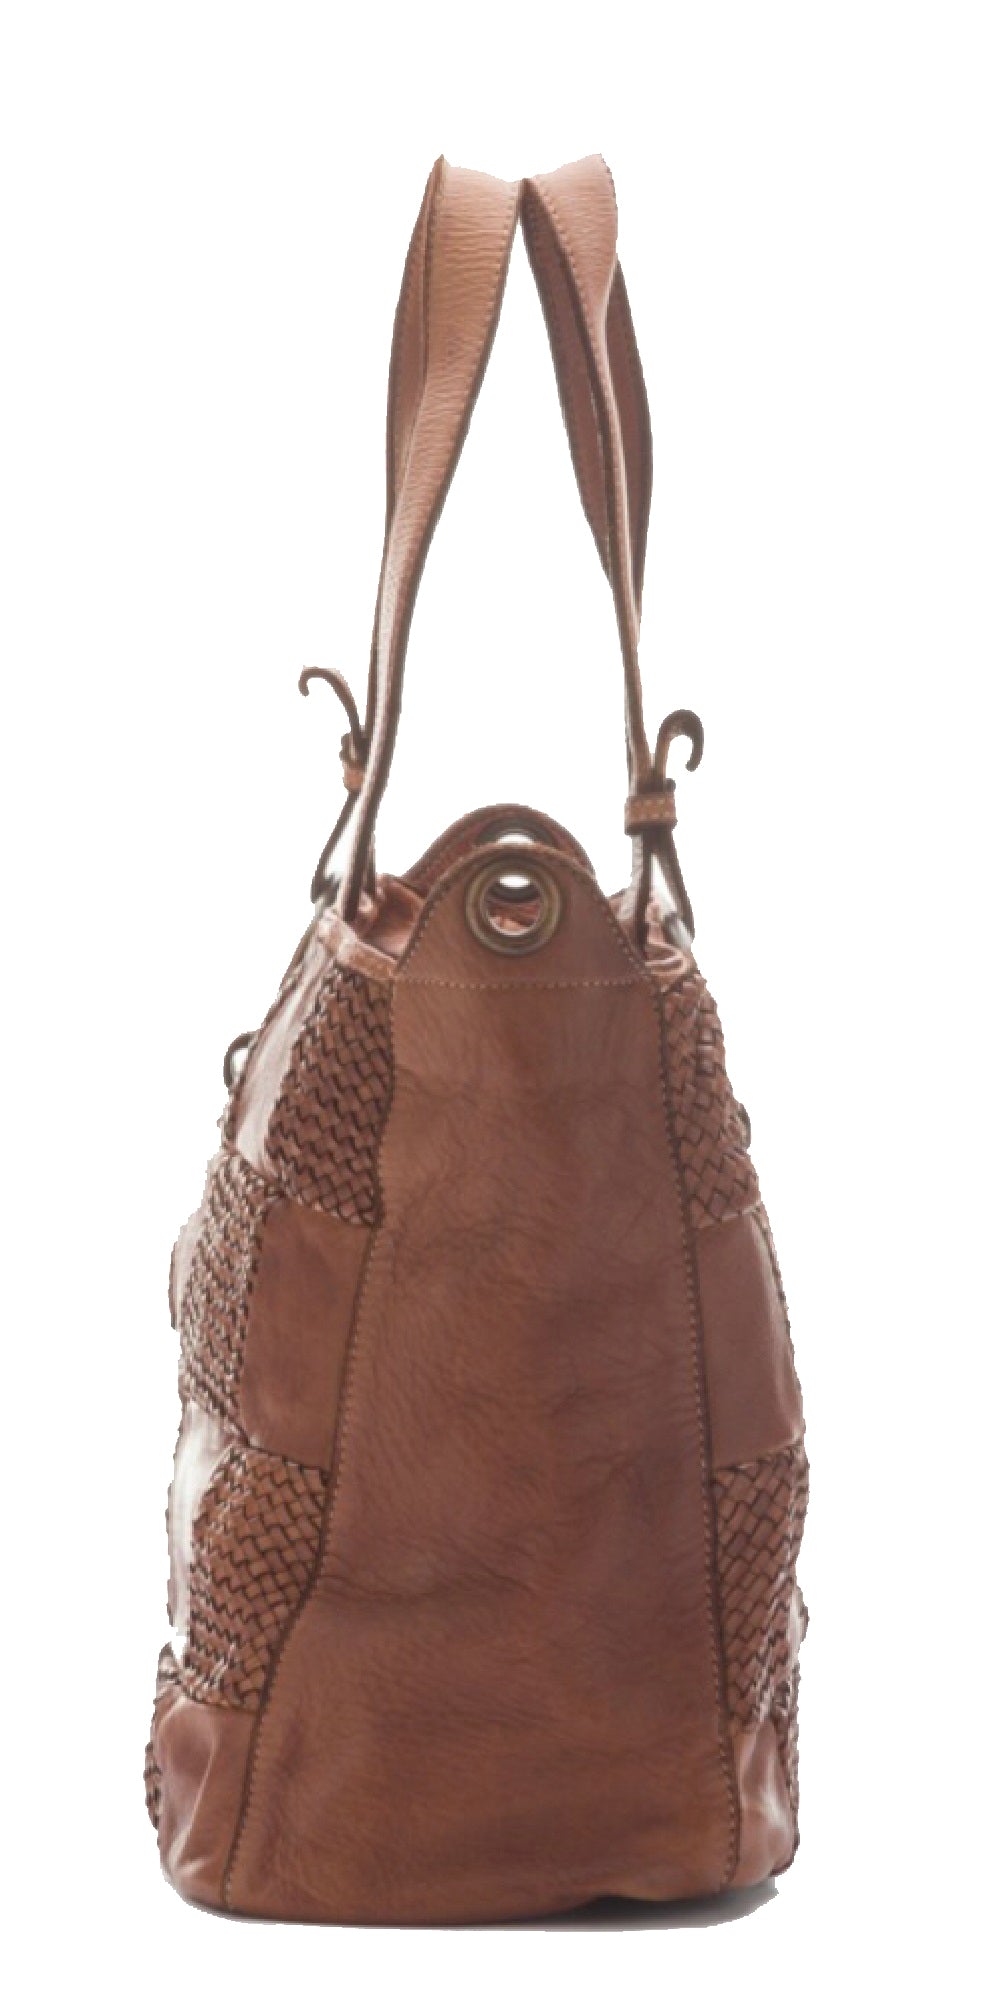 BZNA Bag Belva taupe Italy Designer Damen Handtasche Schultertasche Tasche